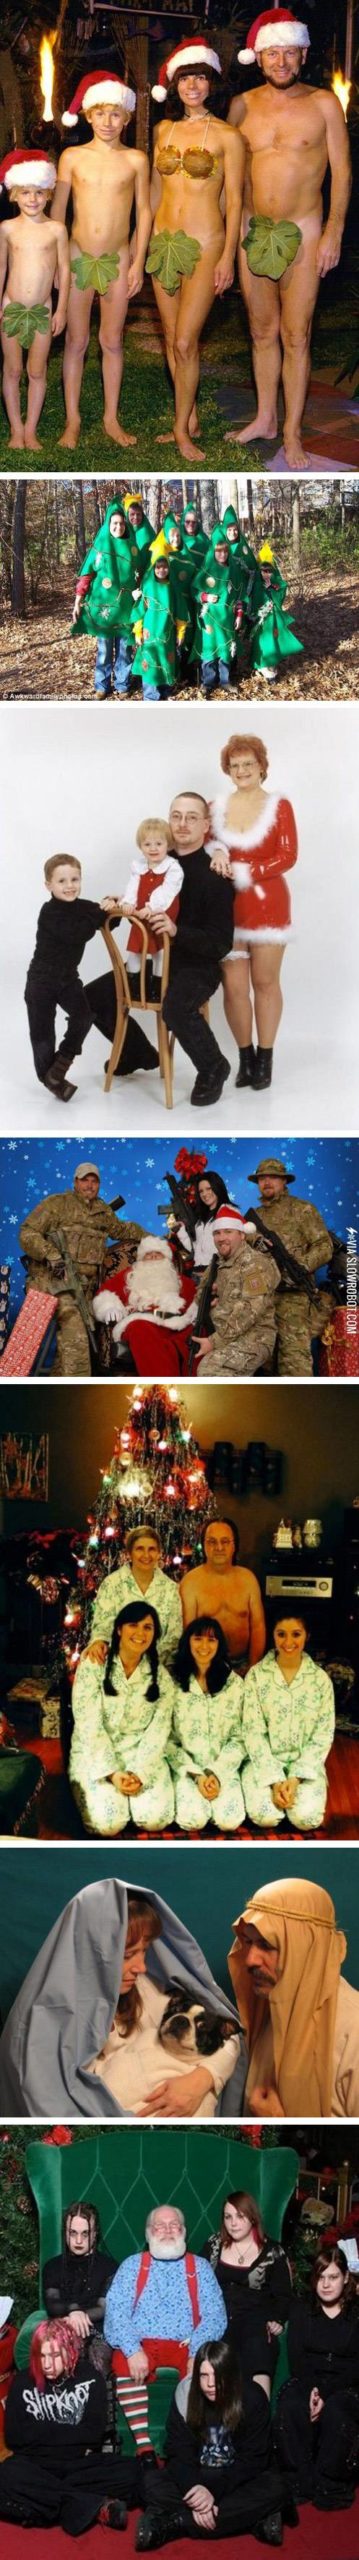 Awkward+Christmas+photos.